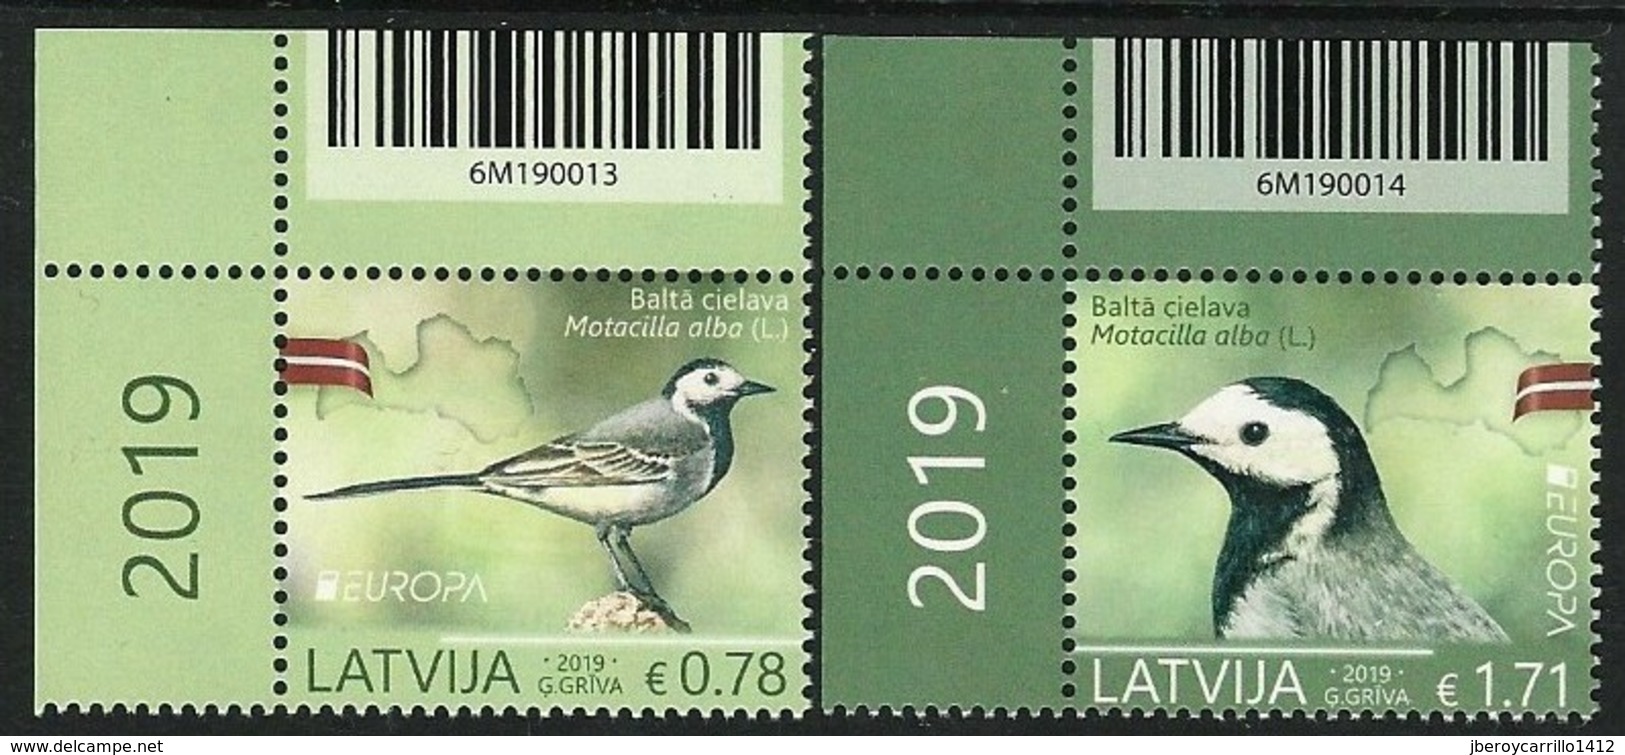 LETONIA /LATVIA /LETTLAND /LETTONIE -EUROPA 2019 -NATIONAL BIRDS.-"AVES - BIRDS -VÖGEL -OISEAUX"- SERIE 2 V.- BAR CODE - 2019